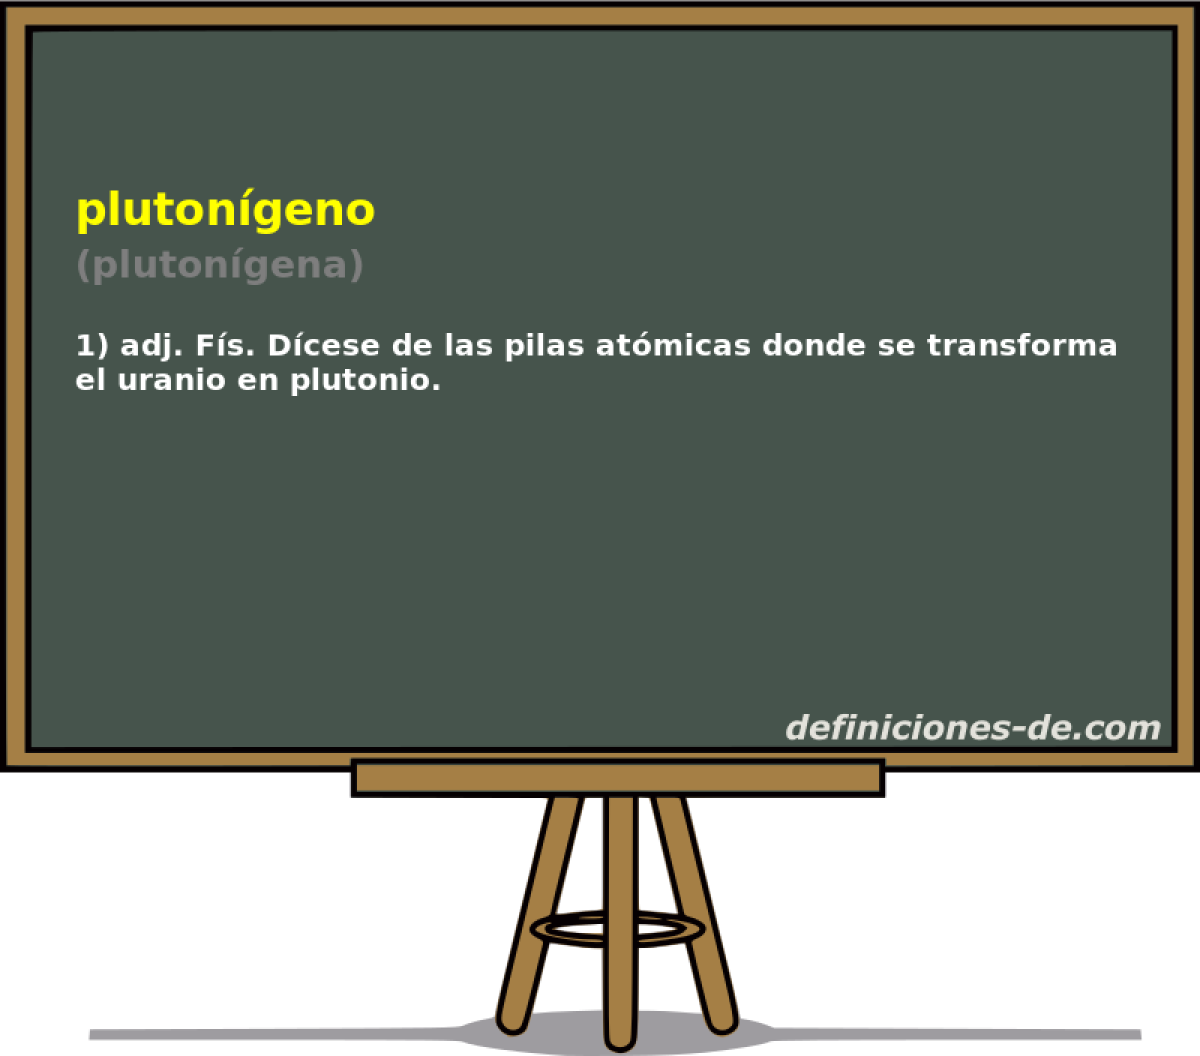 plutongeno (plutongena)